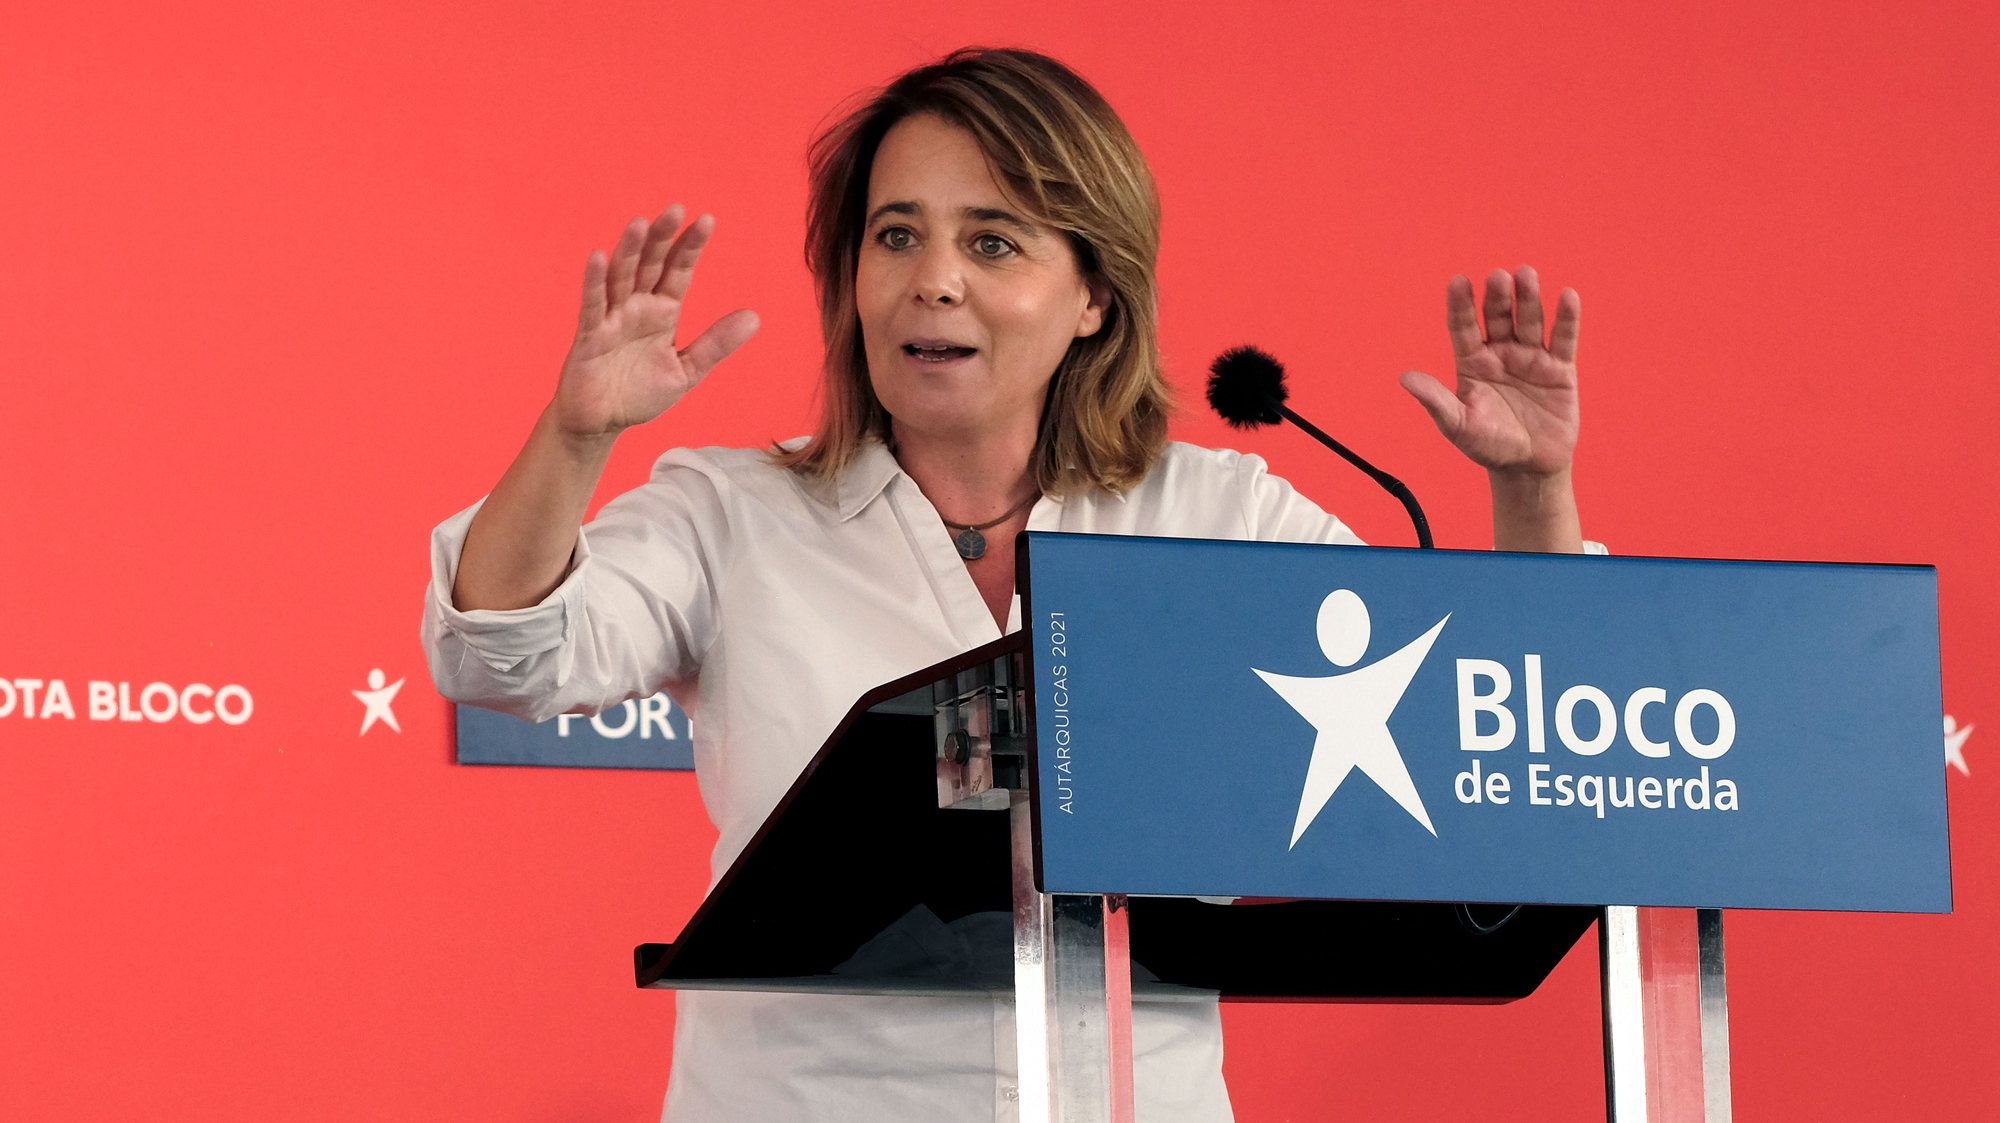 A coordenadora do Bloco de Esquerda, (BE), Catarina Martins, discursa durante um comício no Porto, 18 de setembro de 2021. No próximo dia 26 de setembro mais de 9,3 milhões eleitores podem votar nas eleições Autárquicas, para eleger os seus representantes locais. FERNANDO VELUDO/LUSA